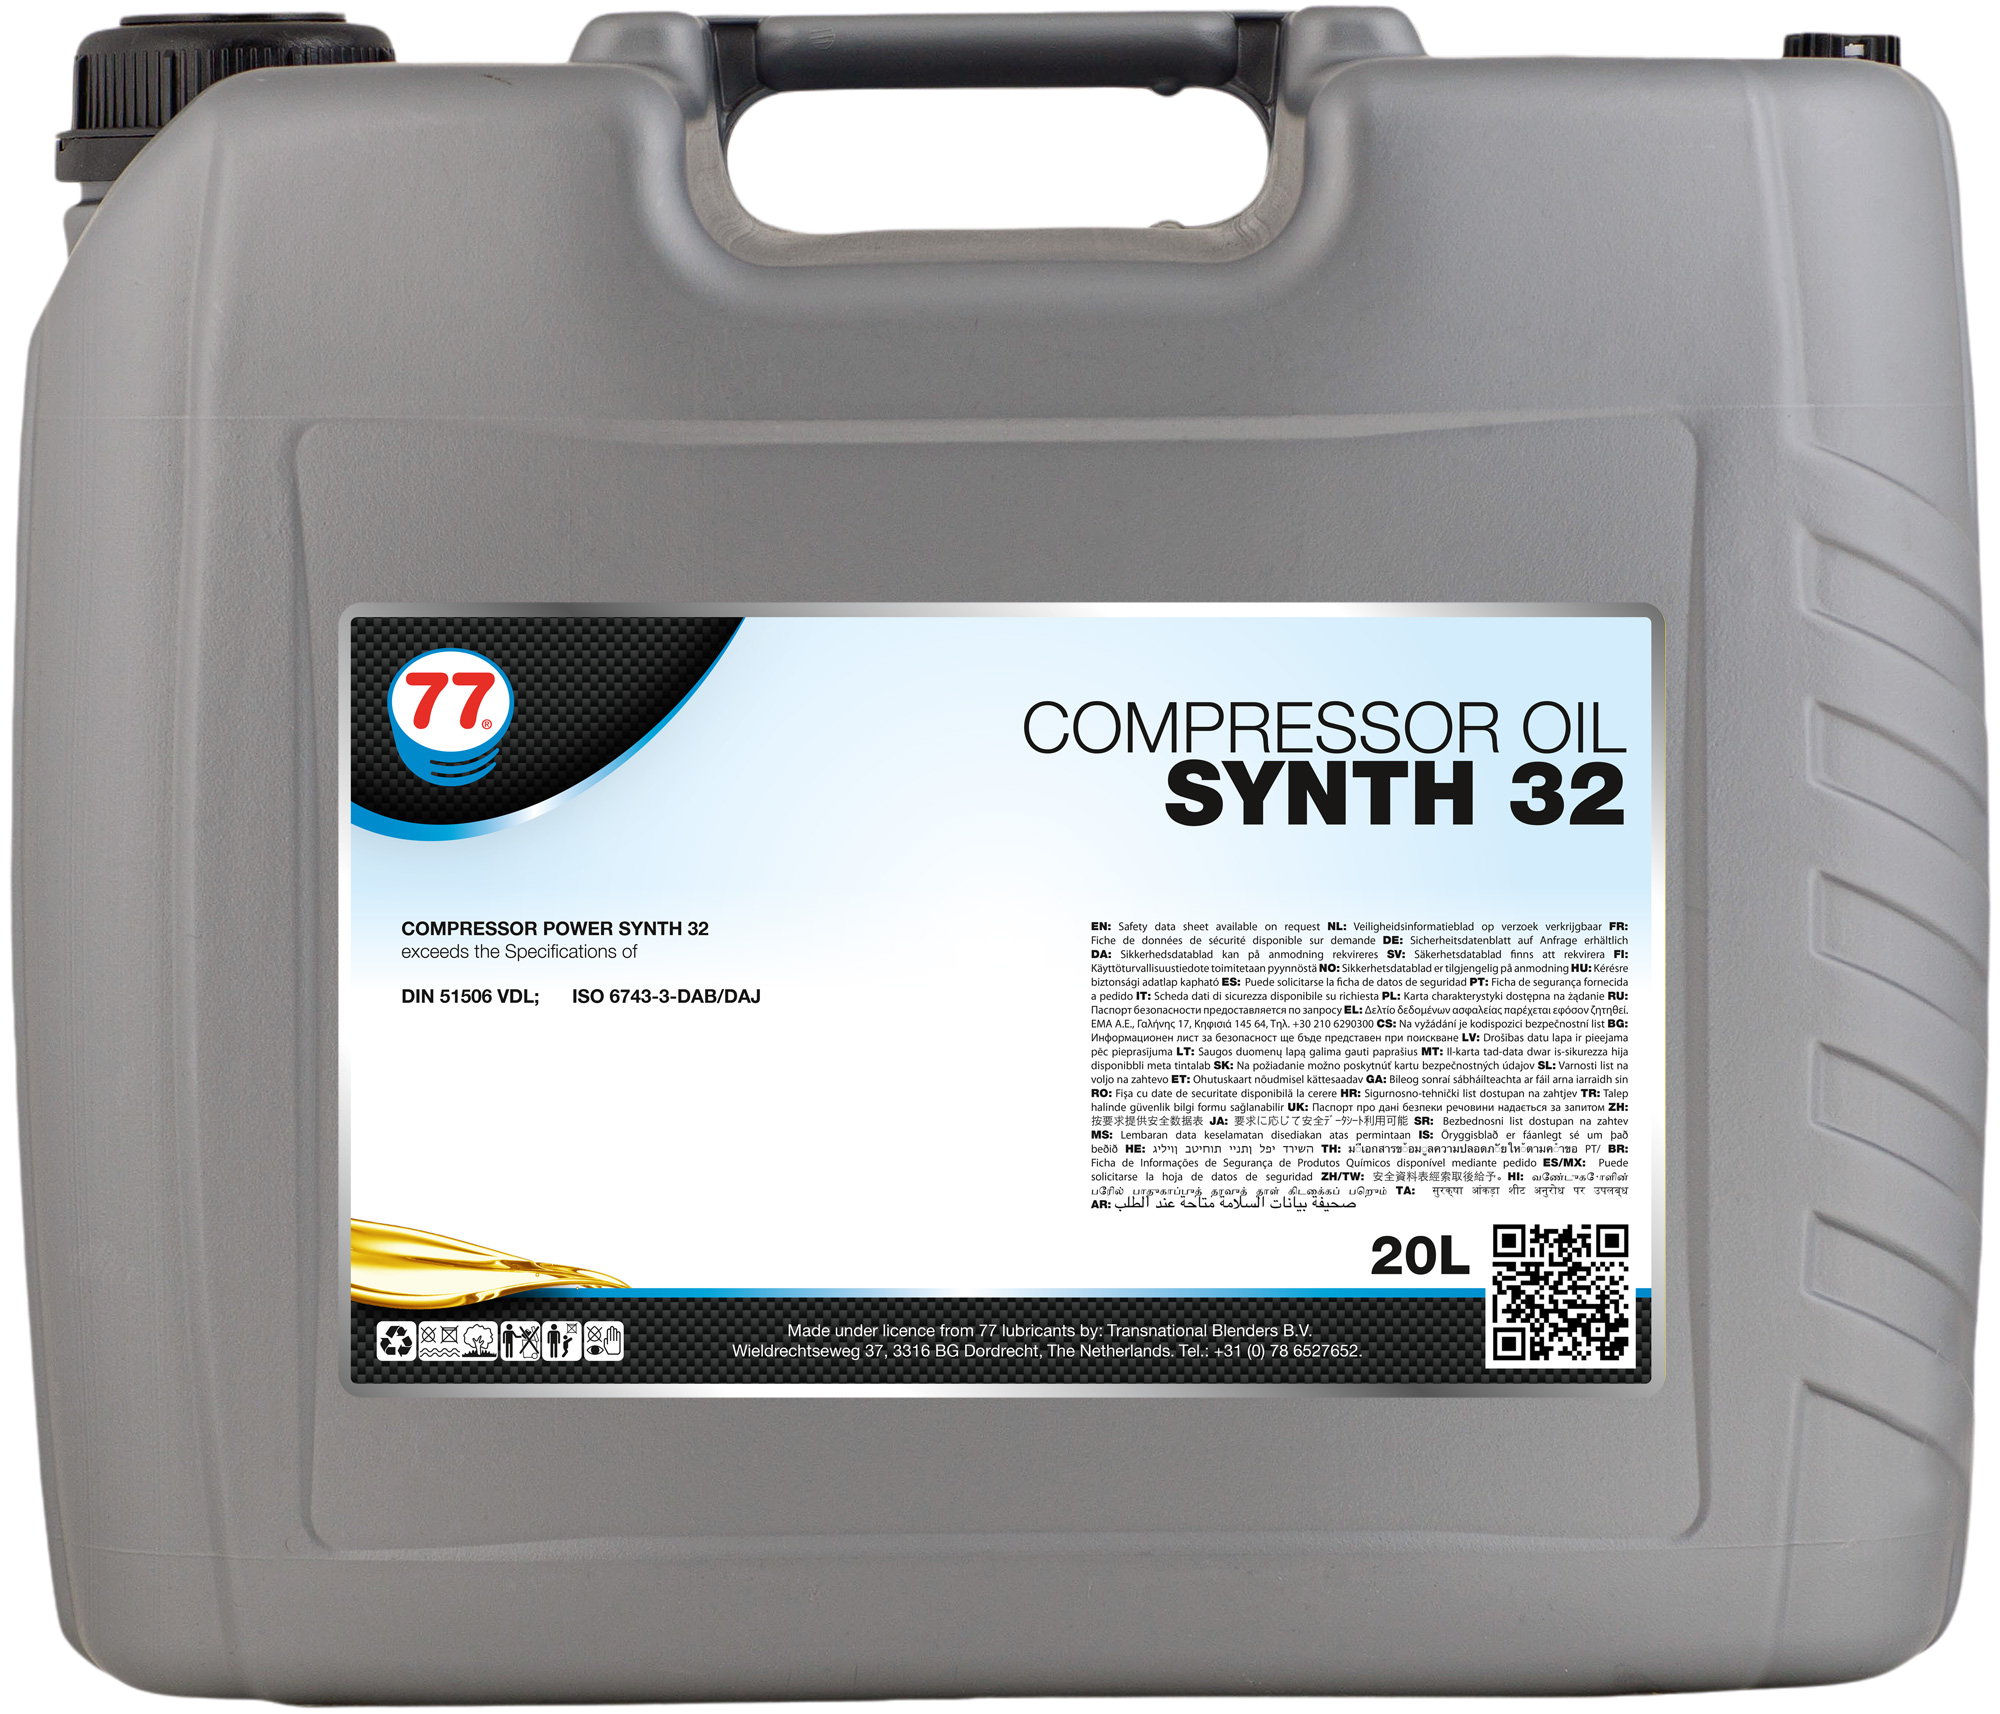 4412-20 Compressor Oil Synth 32 is een geavanceerd volledig synthetisch asloos luchtcompressorsmeermiddel ontwikkeld voor gebruik in roterende compressoren van schroef- of baksontwerp, compressoren en centrifugale compressoren.